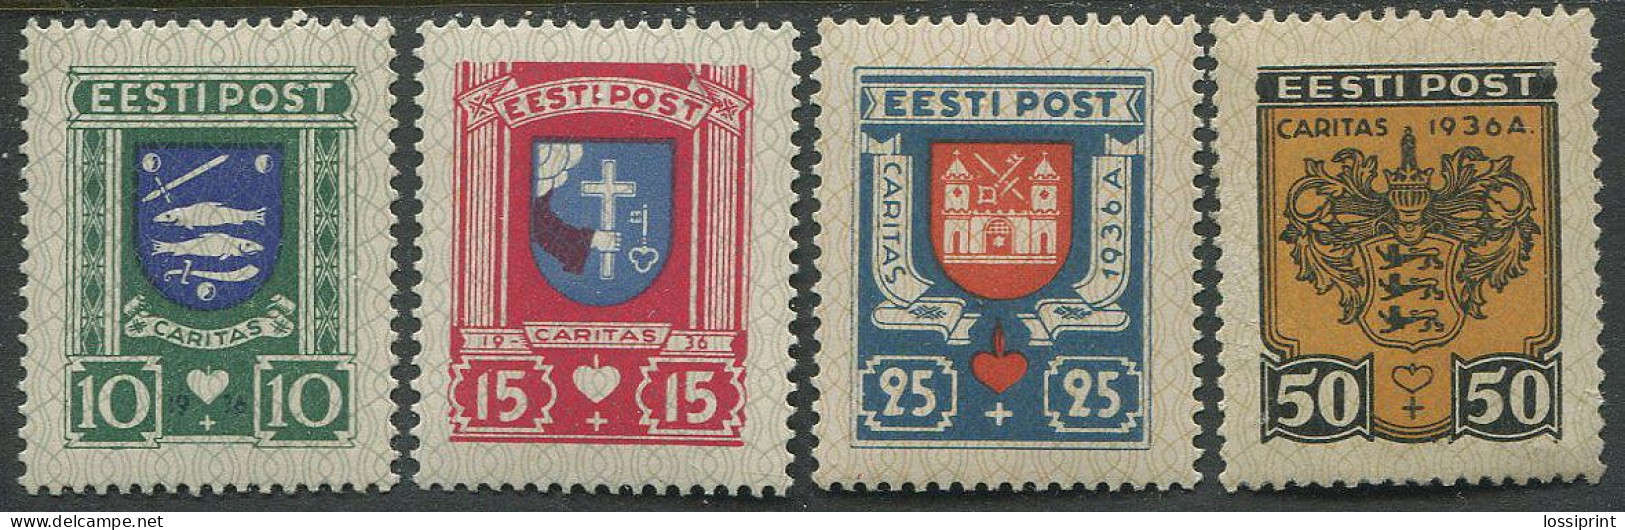 Estonia:Unused Stamps Serie Caritas 1936, Coat Of Arms, 1936, MNH - Estland